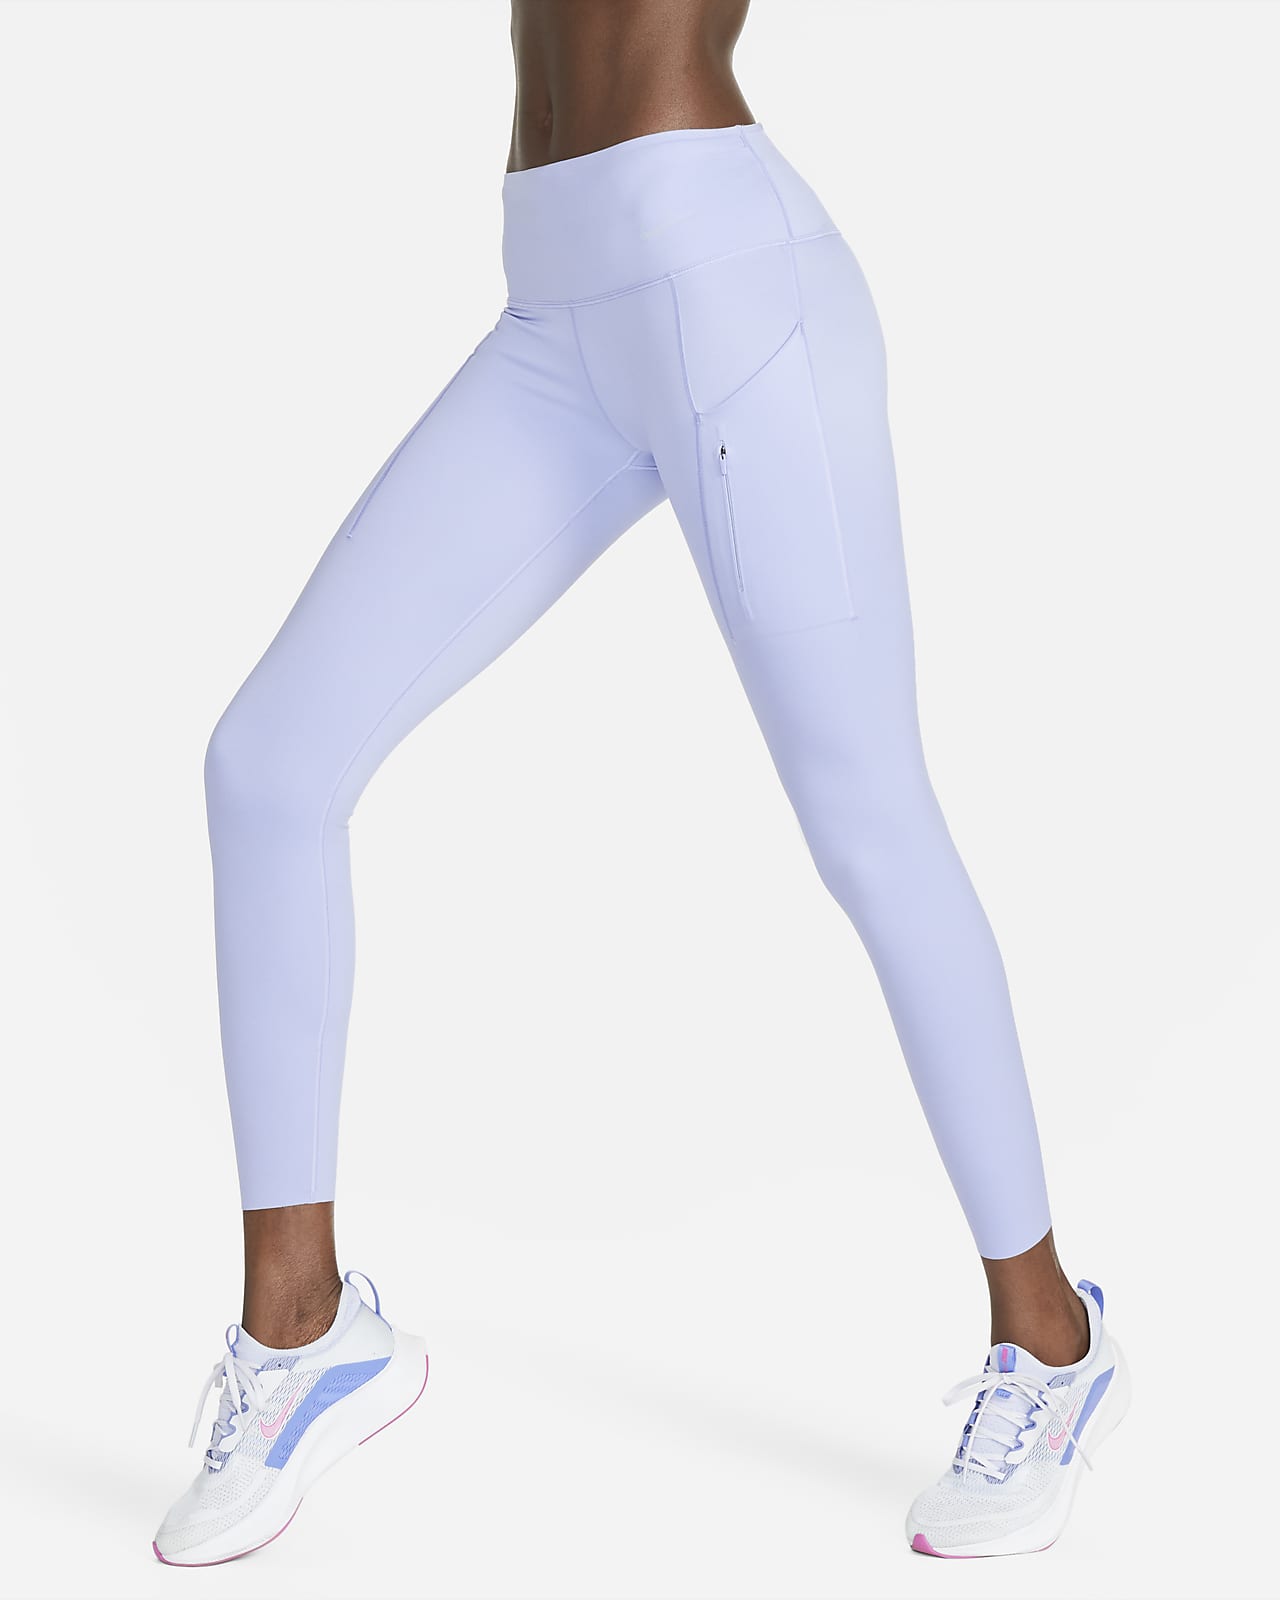 Nike Legging Set - Pale Ivory- Size 6